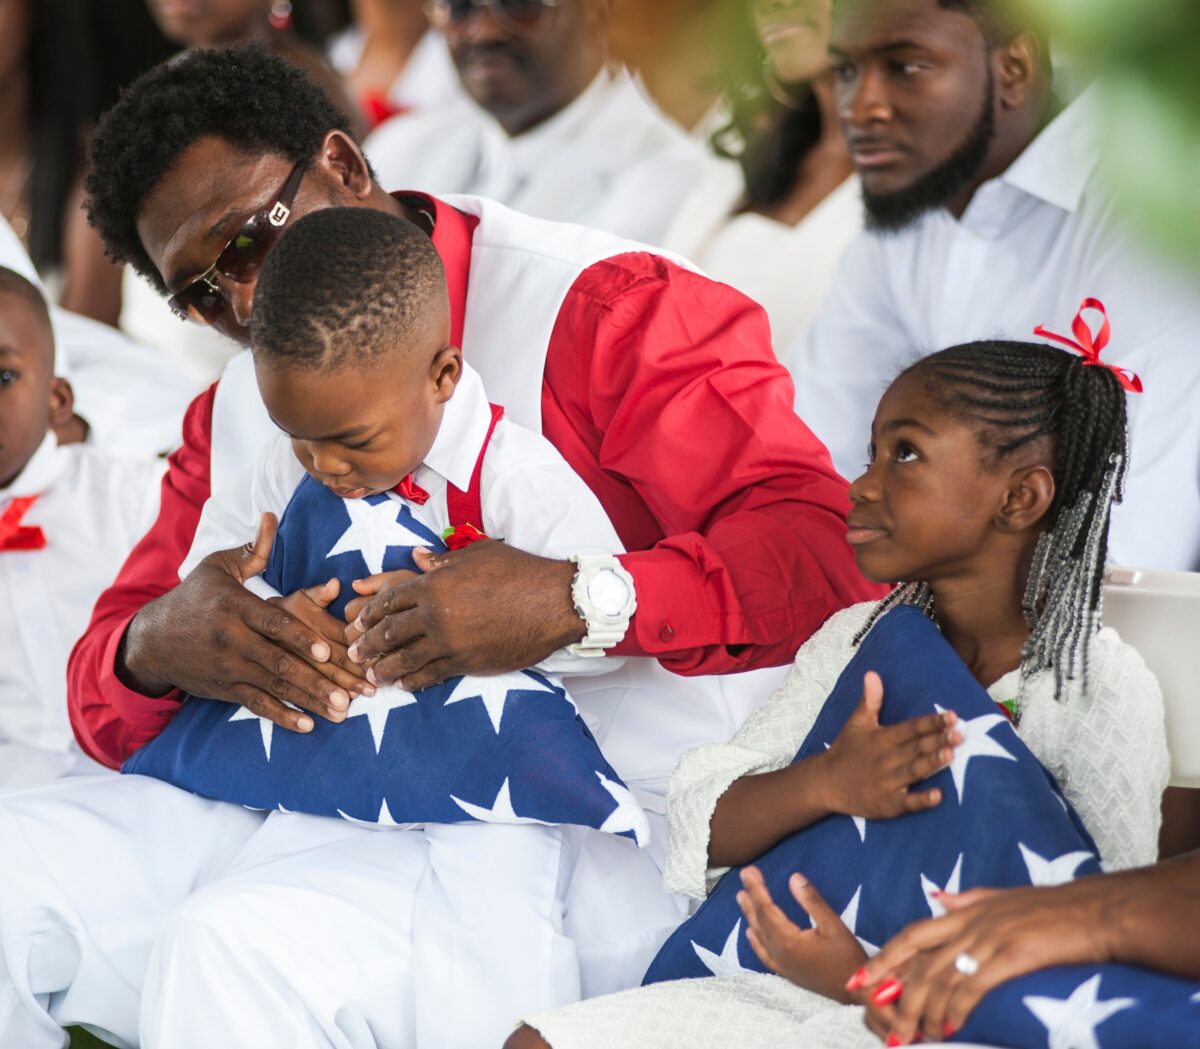 Những đứa con của một Trung sĩ Lục quân Hoa Kỳ La David Johnson, người đã thiệt mạng trong một cuộc phục kích ở Niger, cầm quốc kỳ Mỹ đã gấp lại được trao cho các em trong lễ an táng vào ngày 21/10/2017 tại Hollywood, Florida. (Ảnh: Gaston De Cardenas/Getty Images)